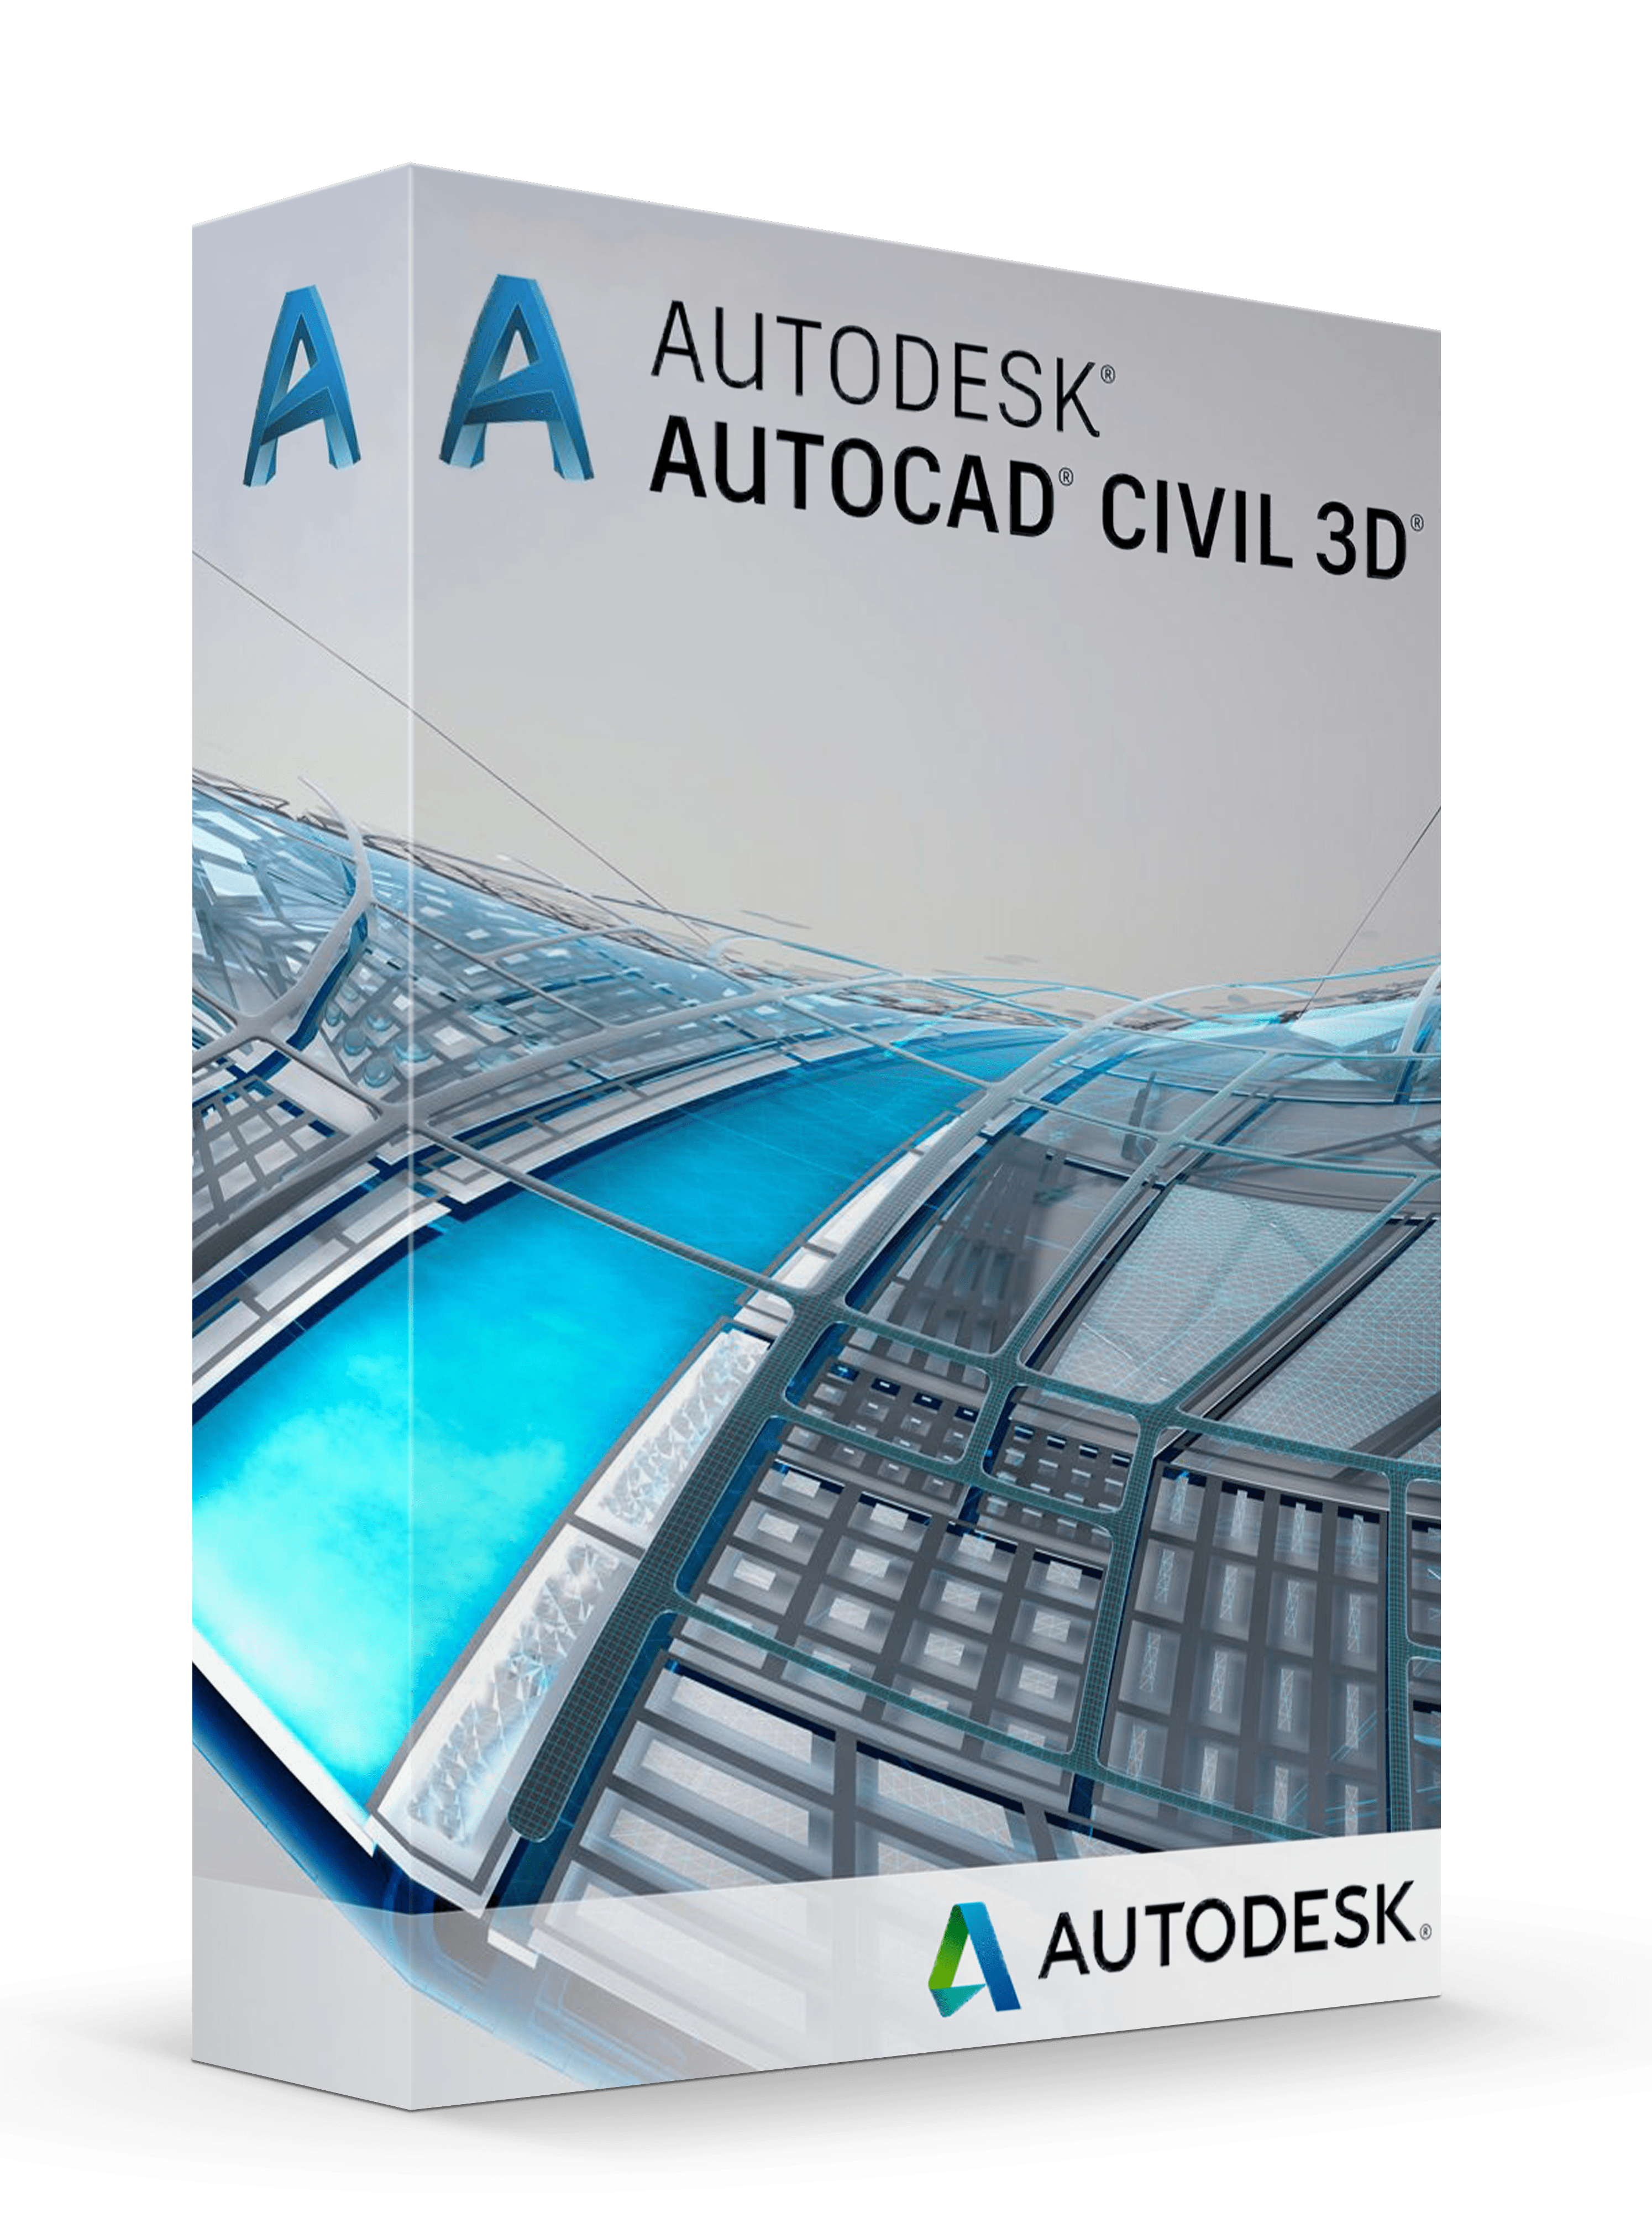 autodesk autocad civil 3d system requirements